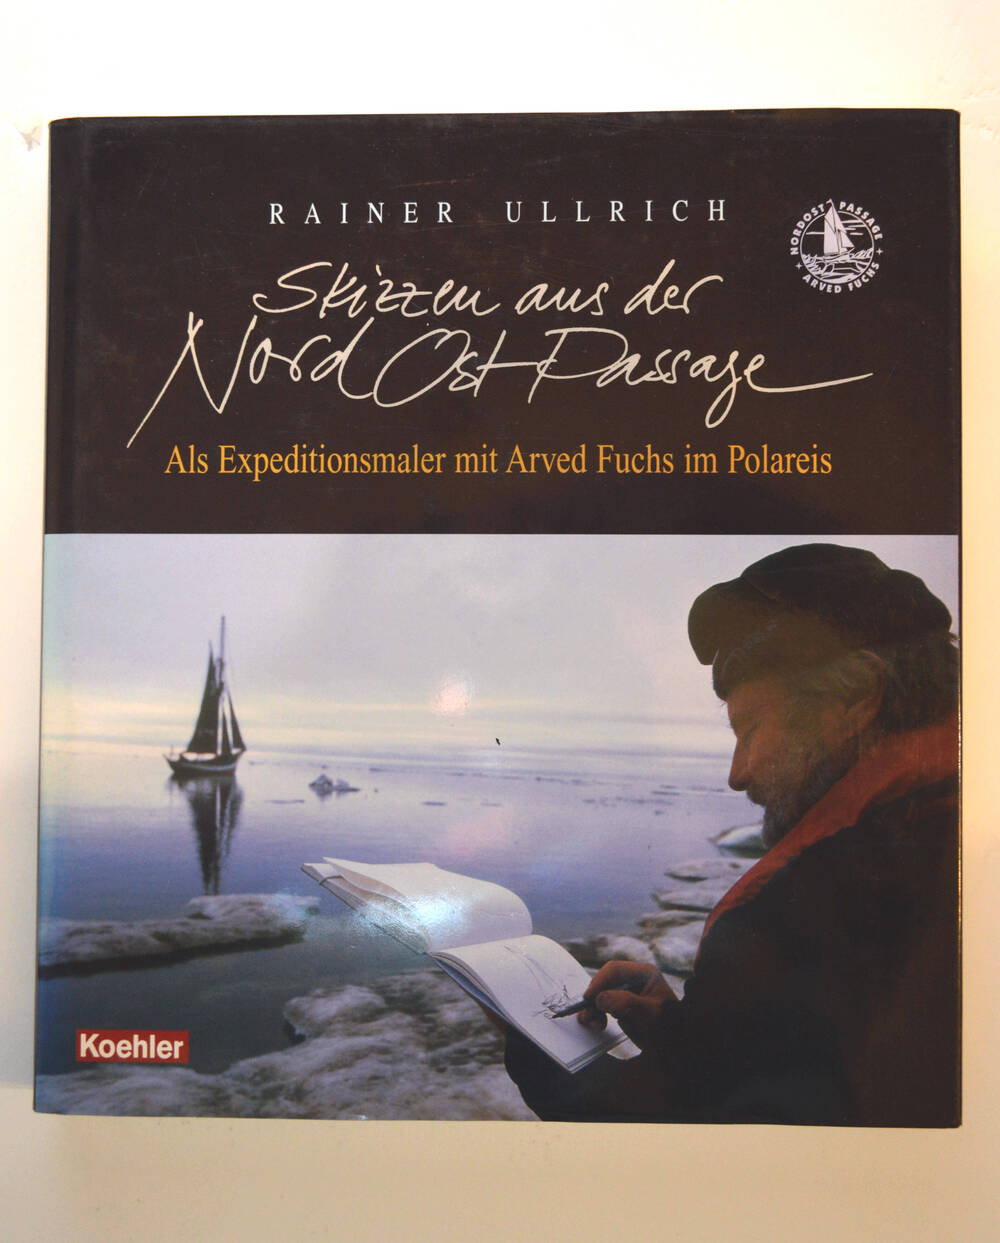 Книга.Rainer Ullrich. Skizzen aus der Nordost – Passage.